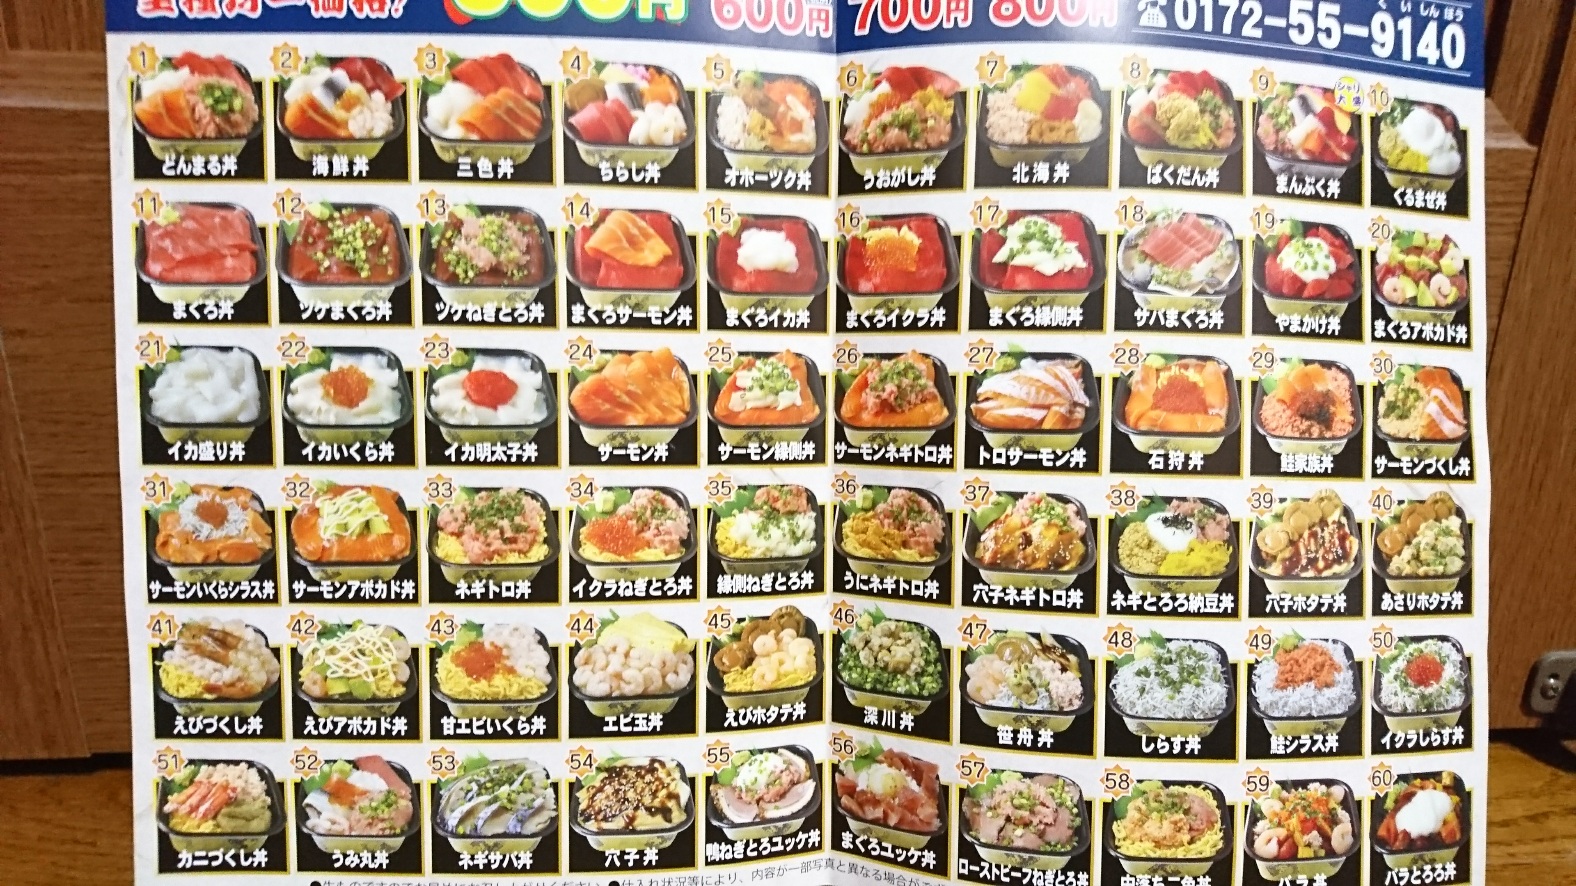 3 21オープン 海鮮丼テイクアウト店 丼丸 えび 青森県 弘前市